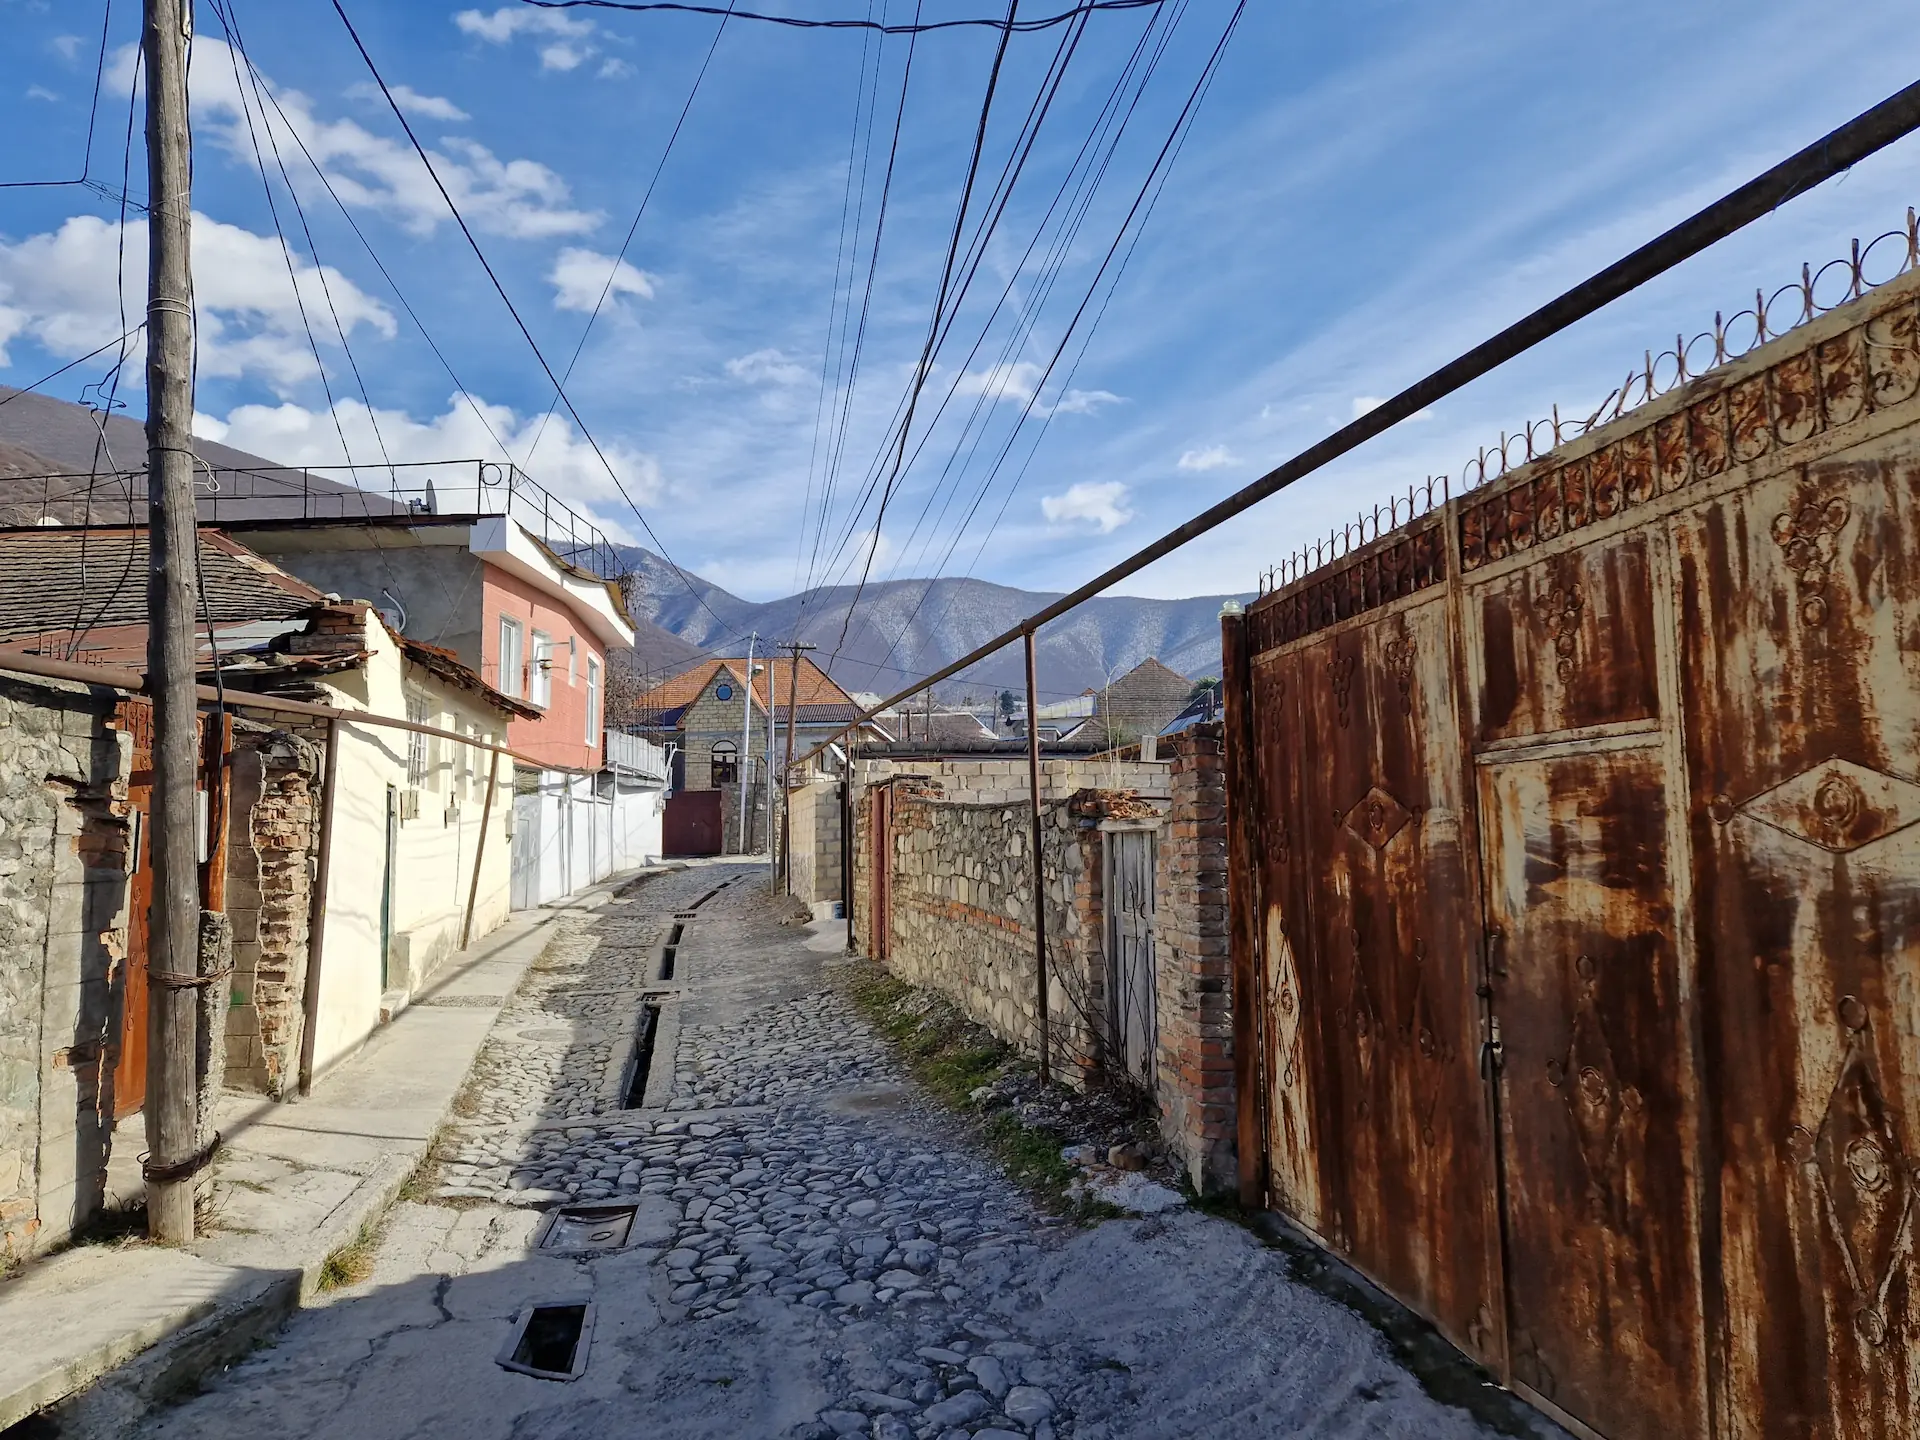 Un vieux portail rouillé dans une ruelle de la vieille ville, les montagnes s'élèvent à l'arrière.